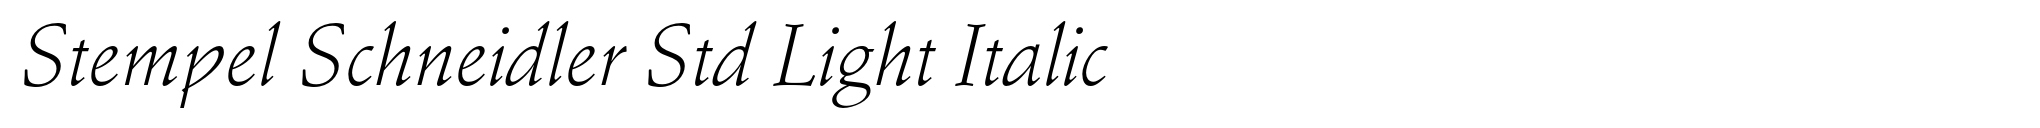 Stempel Schneidler Std Light Italic image